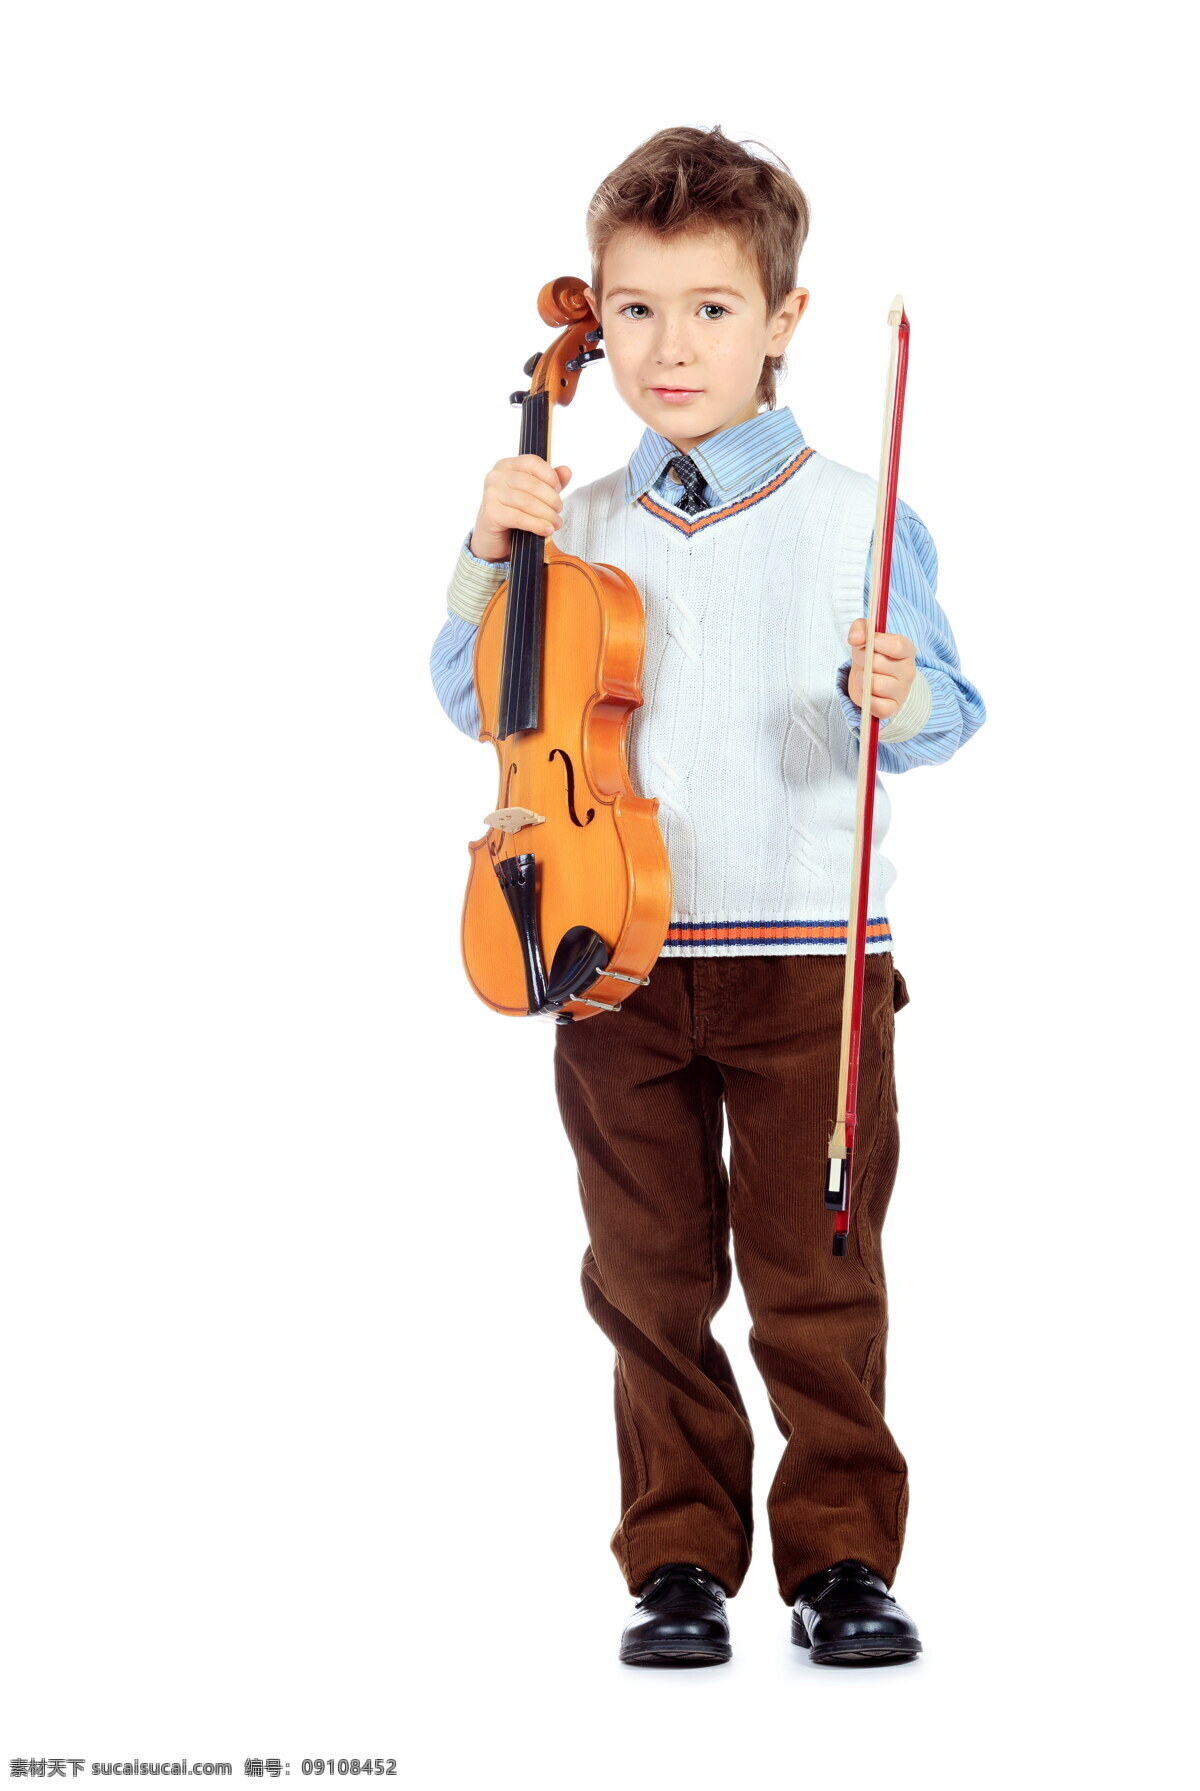 小提琴 孩子 乐器 儿童 外国孩子 儿童图片 人物图片